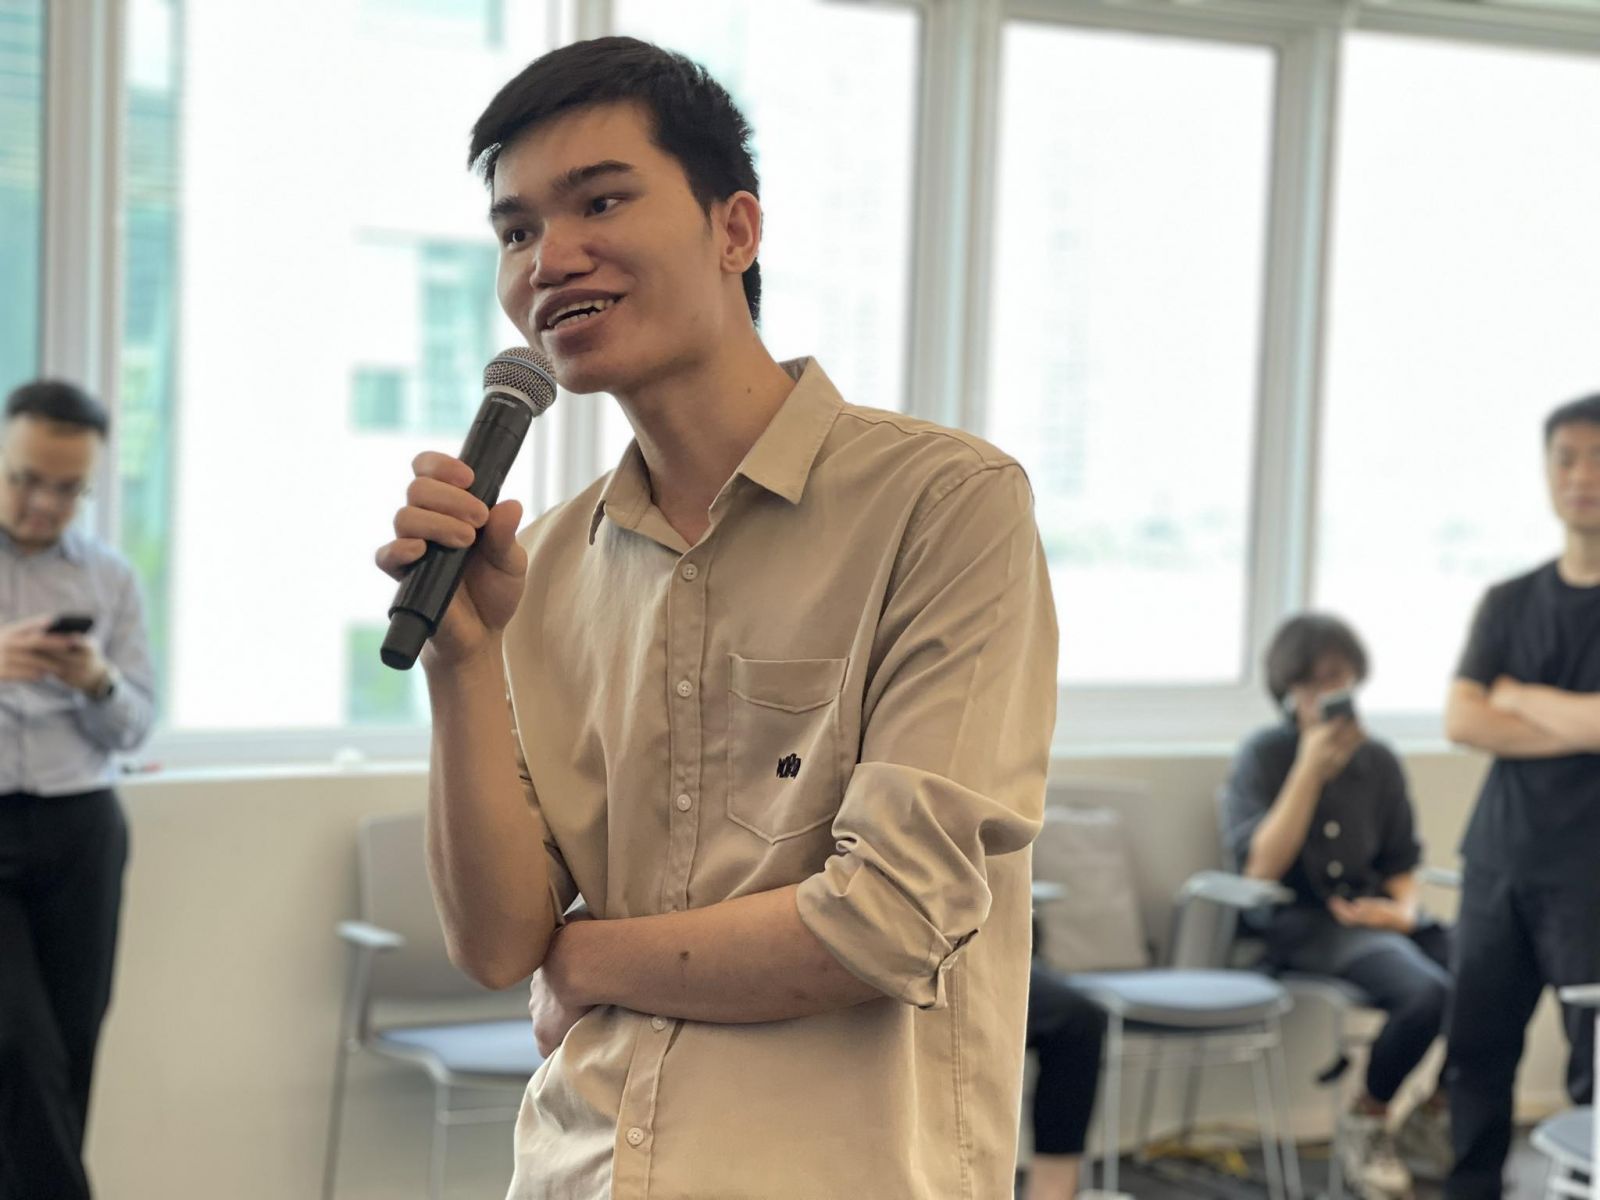 Hoàng Văn Đắm (24 tuổi, Hà Nội) từng là công nhân tại KCN Bắc Thăng Long trước khi chuyển nghề lập trình viên thành công nhờ khóa học trực tuyến tại FUNiX.